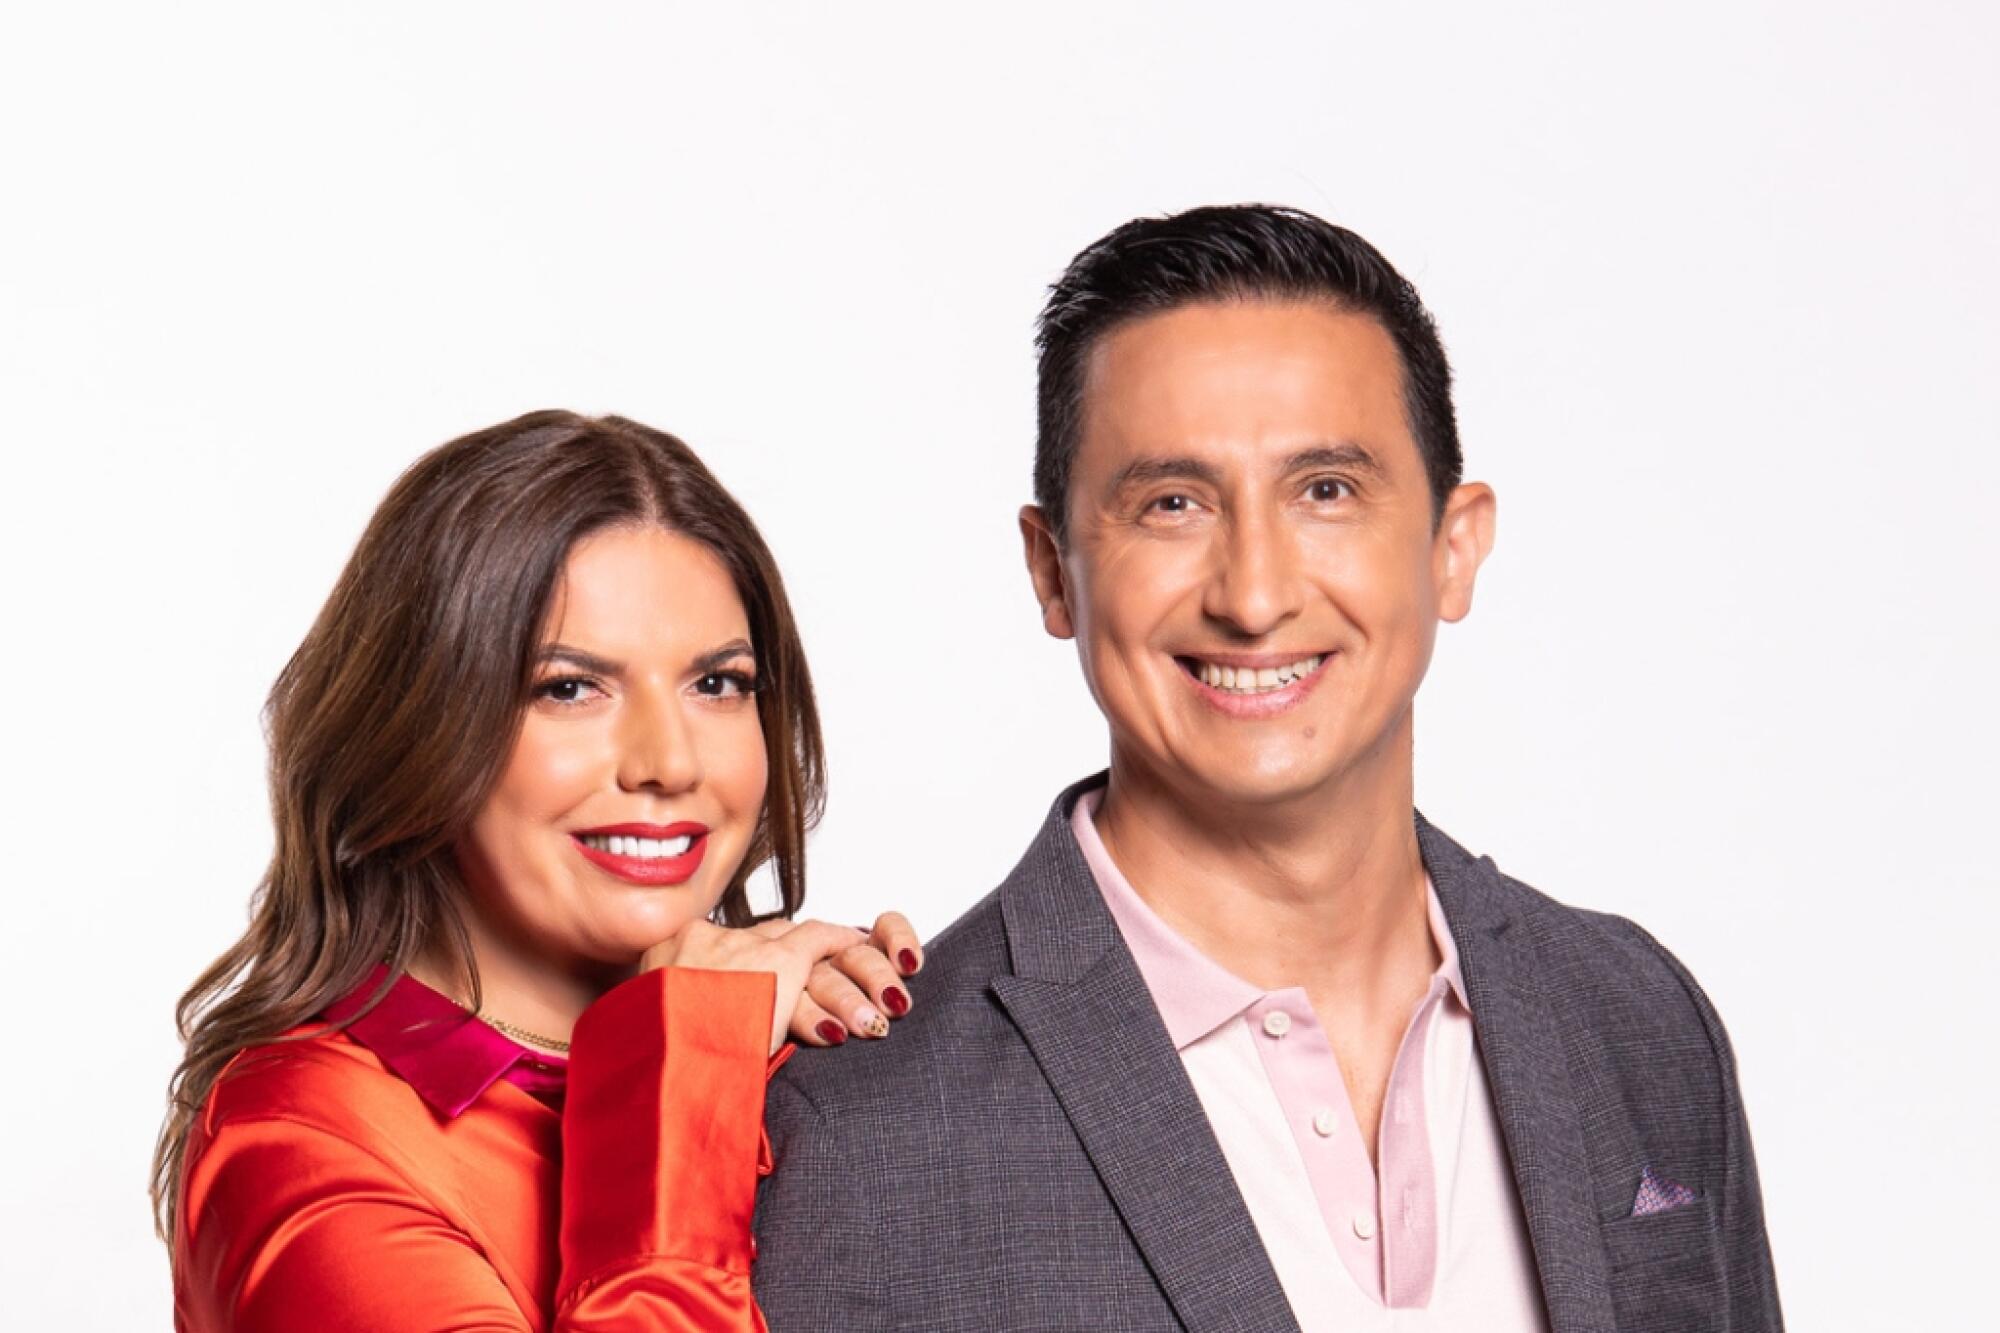 Ysaac Álvarez junto a Fernanda Kelly conducen el nuevo show de las mañanas "Levántate" de la estación KLOVE 10.7.5 FM